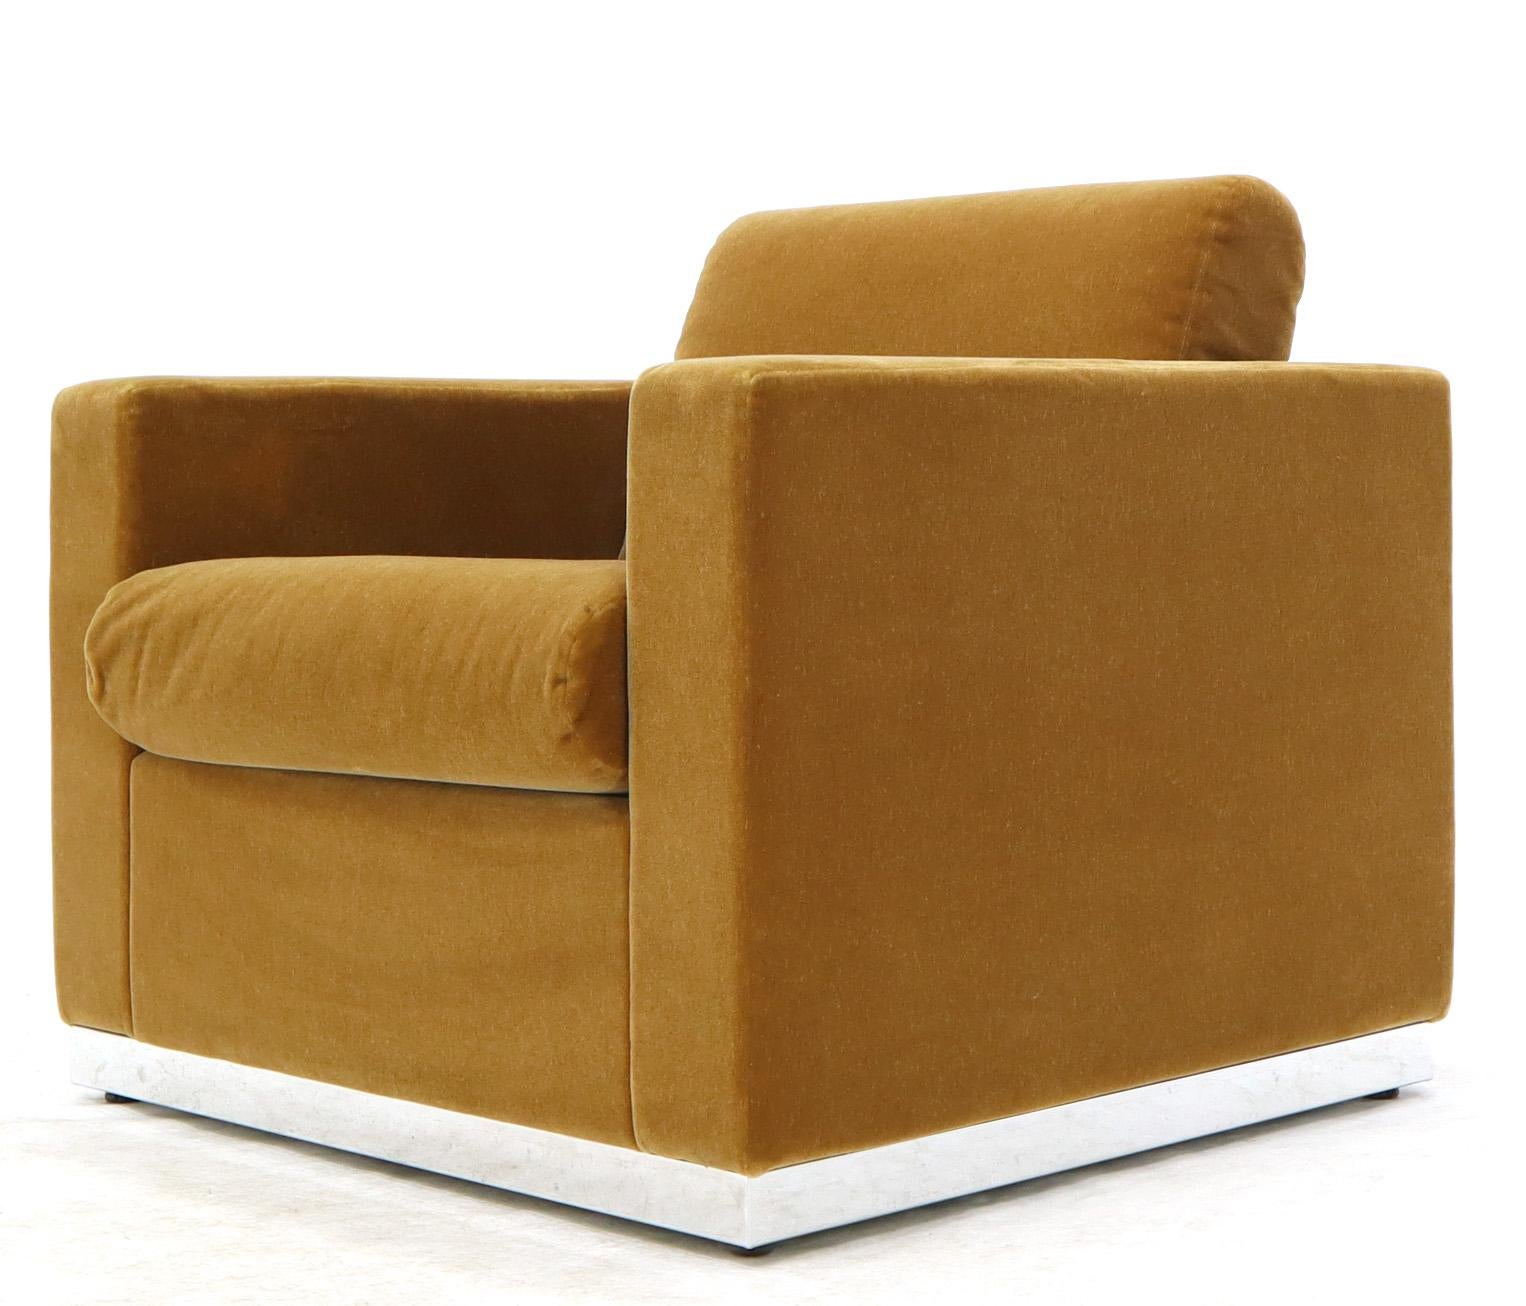 Ein Paar Club-Sessel mit dicker Mohair-Polsterung, die auf einem geschweißten und polierten Chromgestell aus Edelstahl stehen.
 